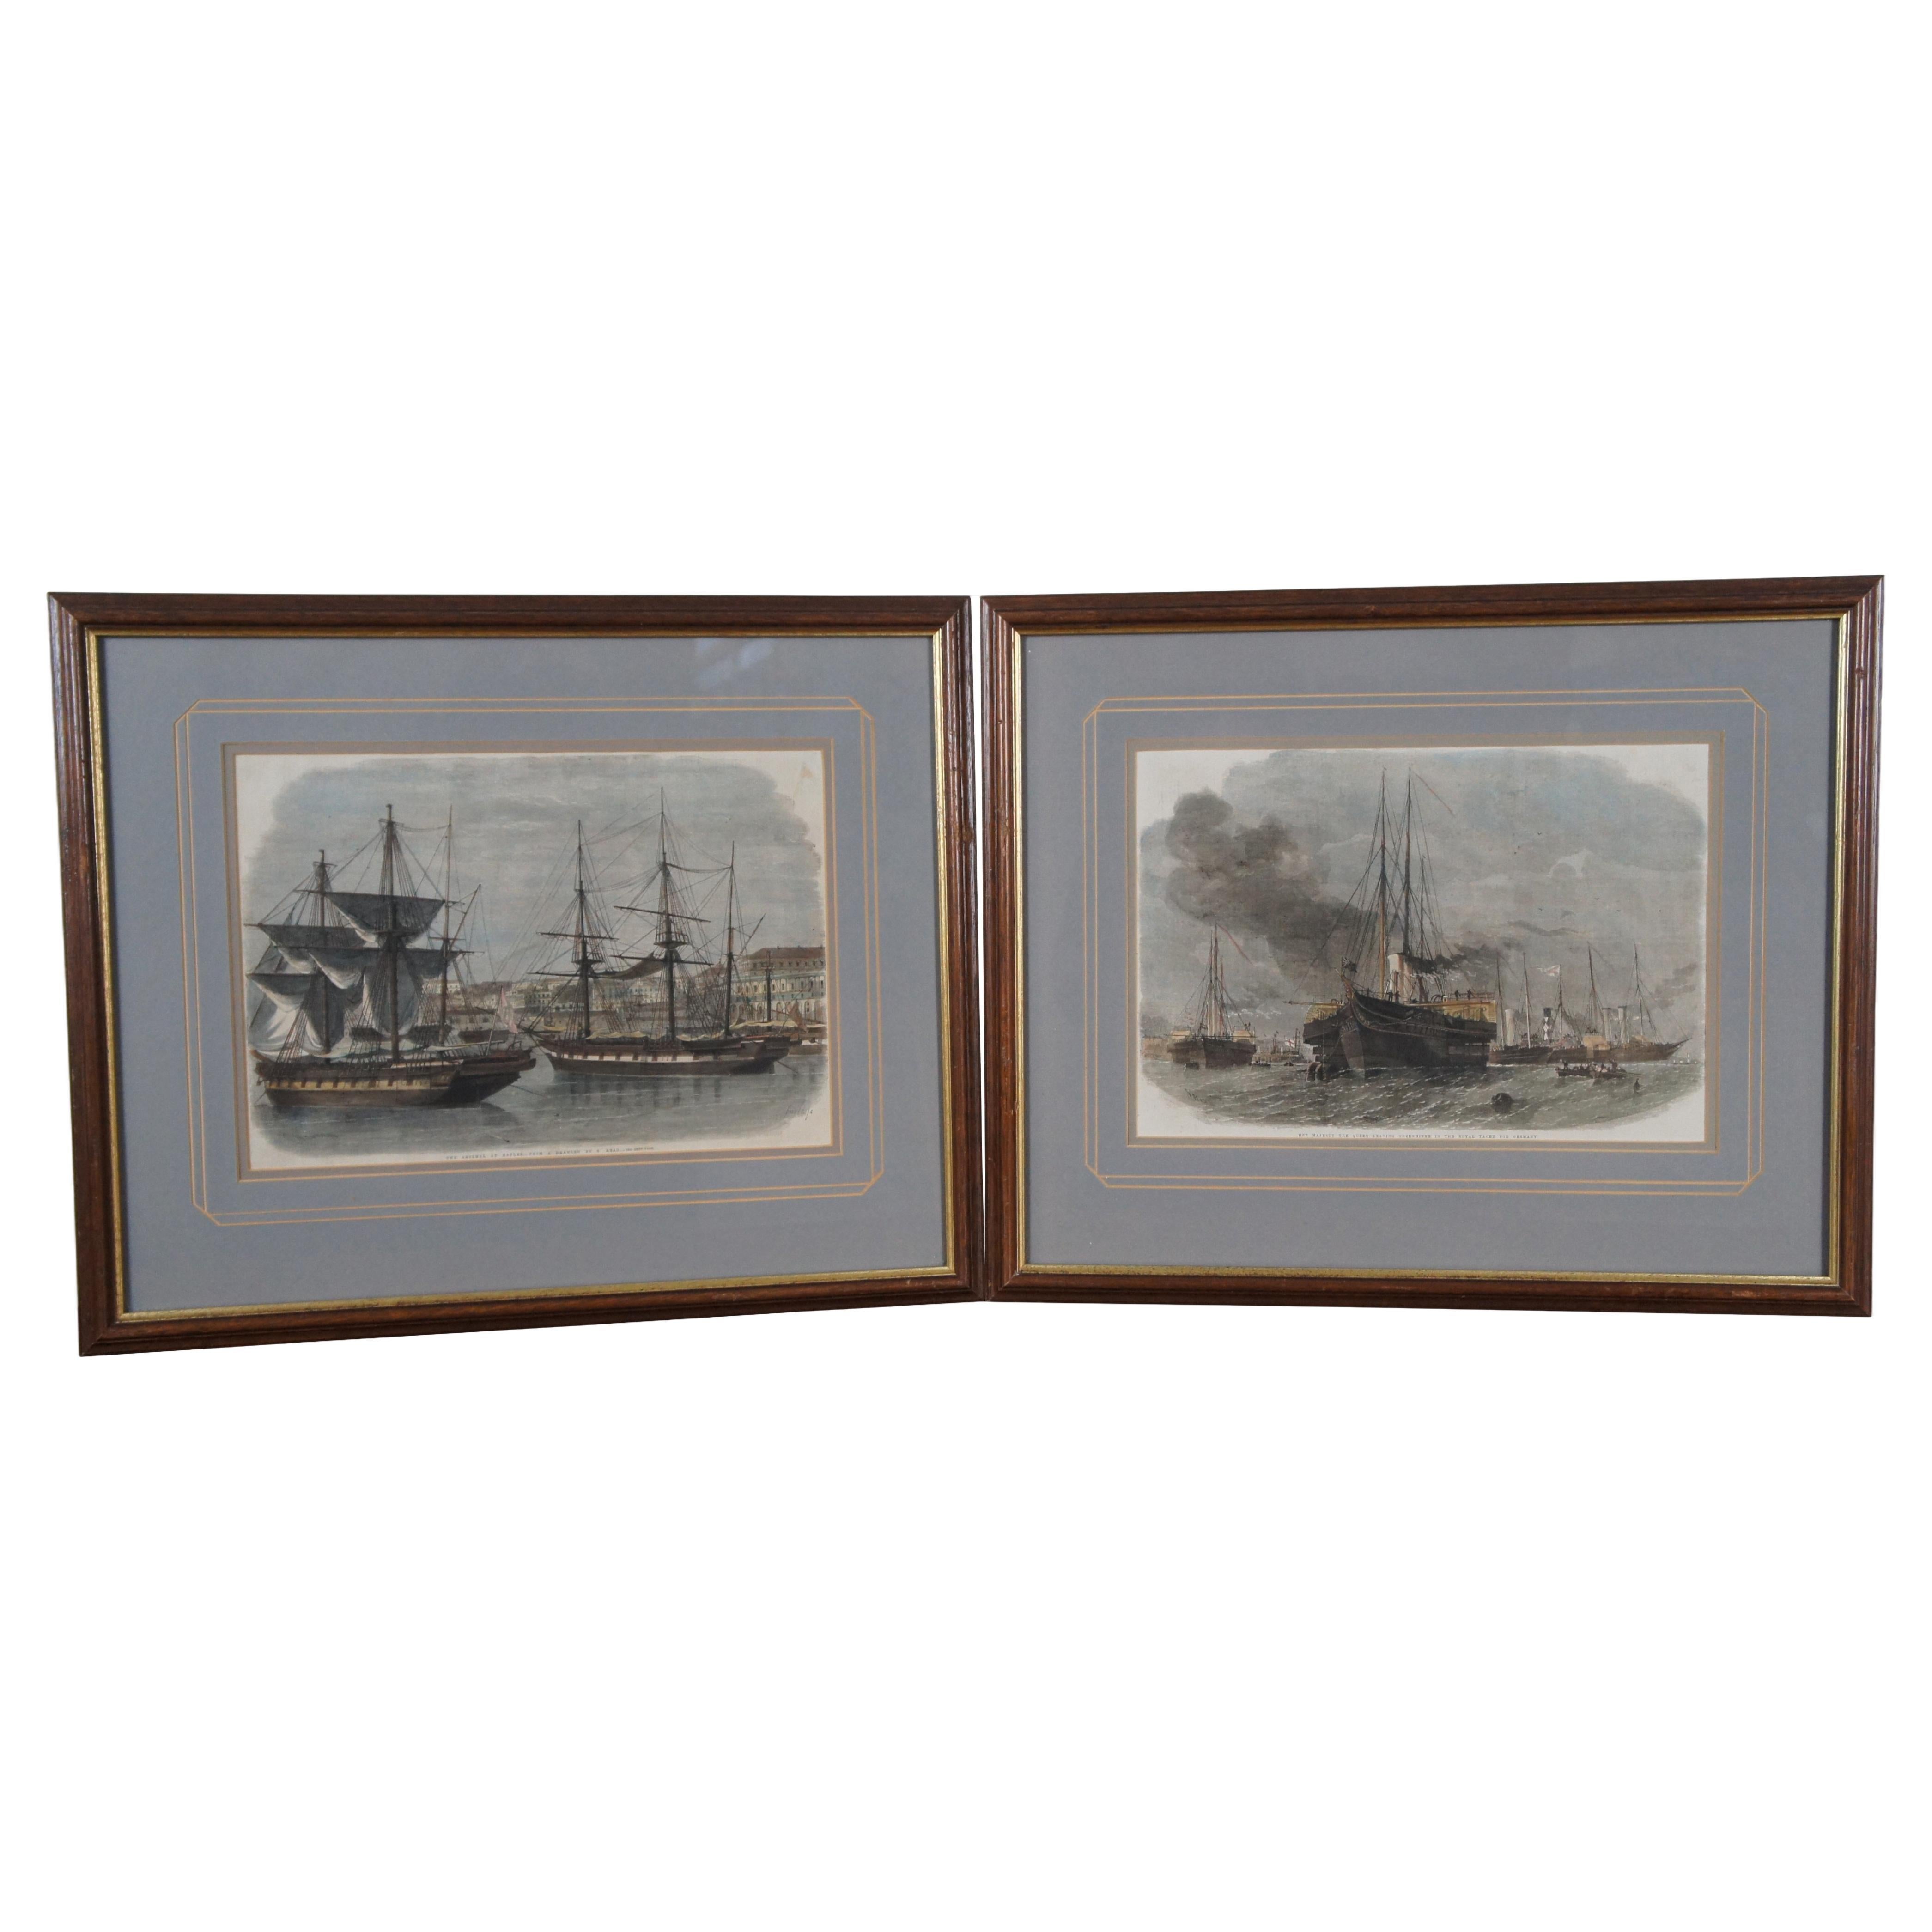 2 gravures de navires maritimes anciennes de Smyth & Weedon de 22 pouces